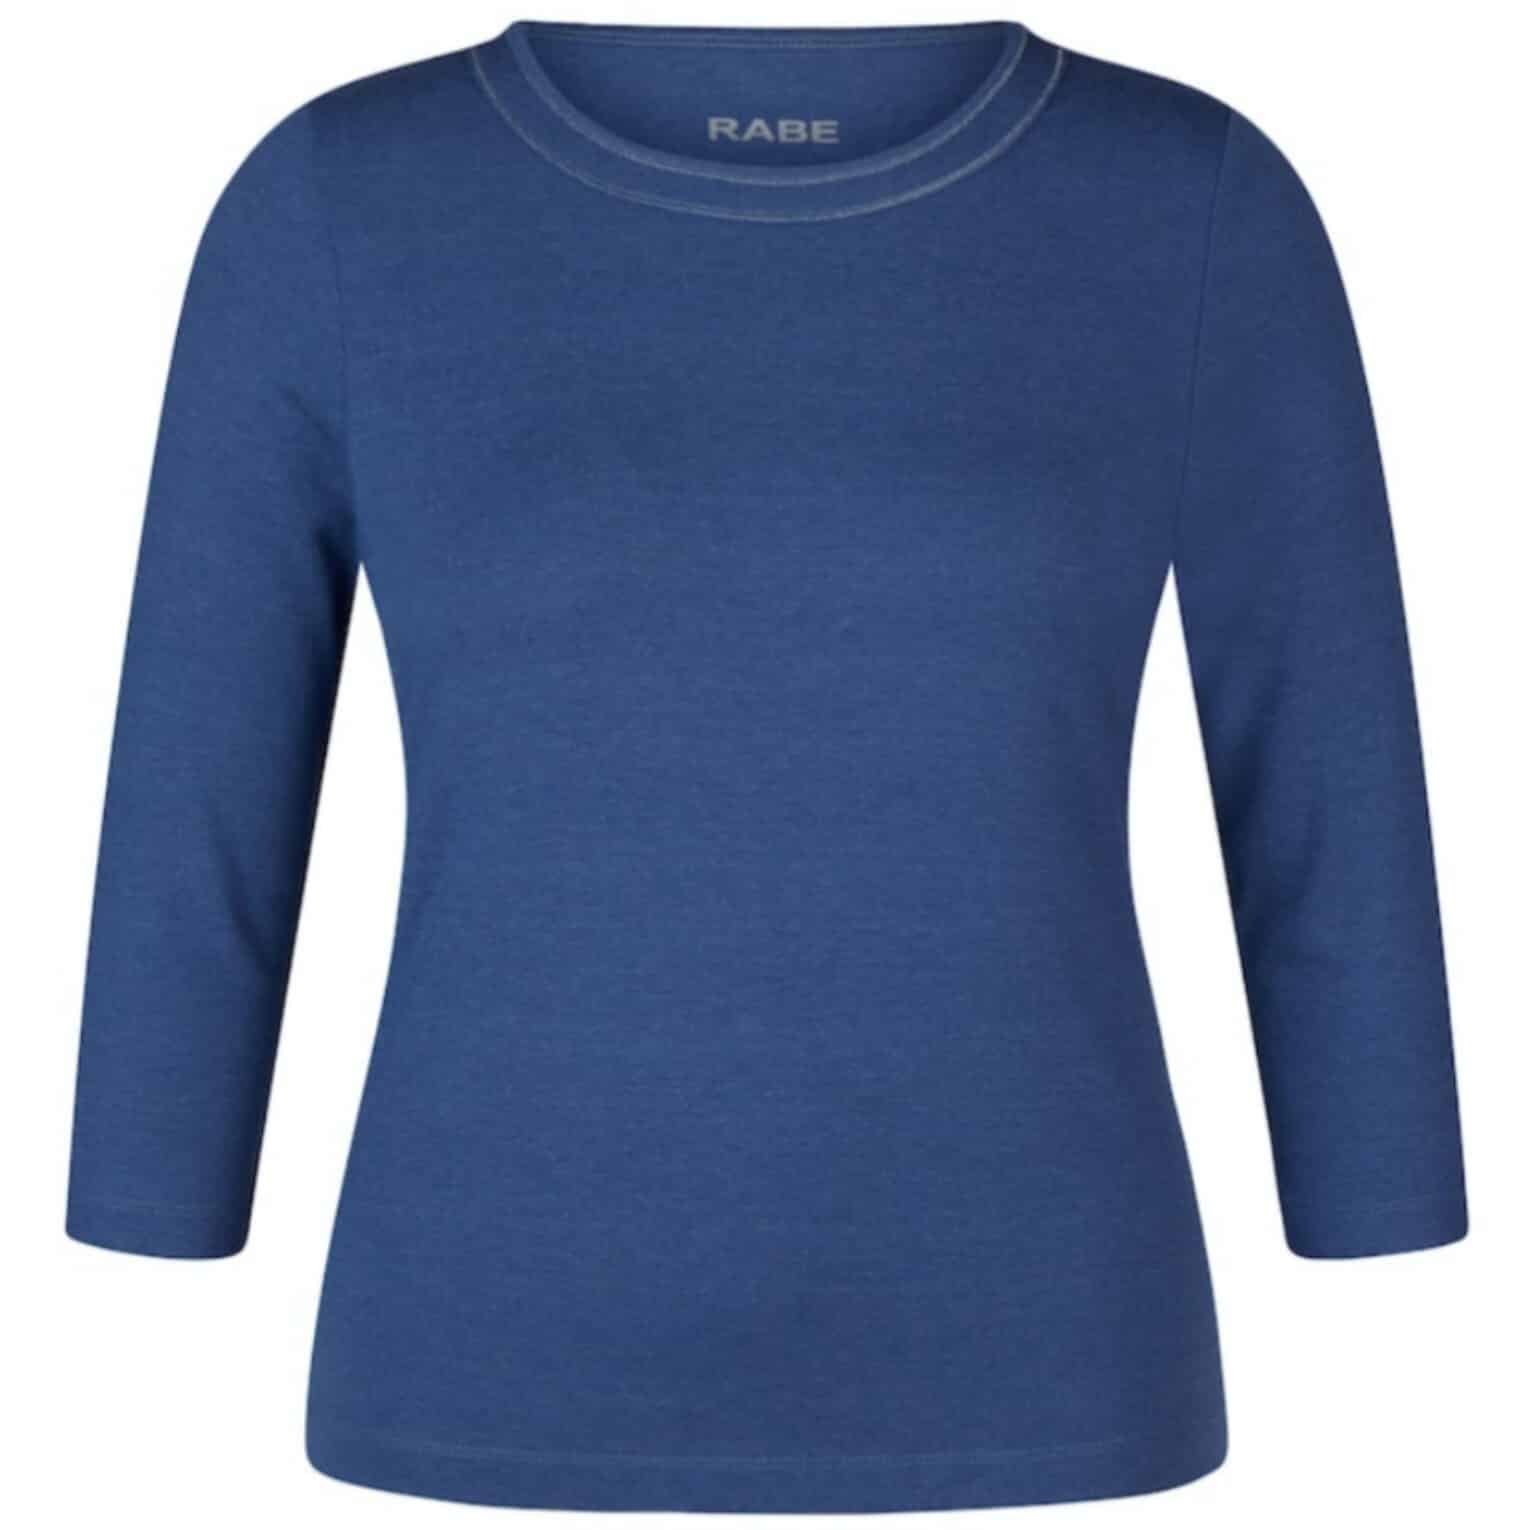 unifarbenes Shirt für Damen von Rabe Moden Artikel 52-111300 in denim Blau bei Mode Sabine Lemke im Geschäft in Winnenden und im Onlineshop!